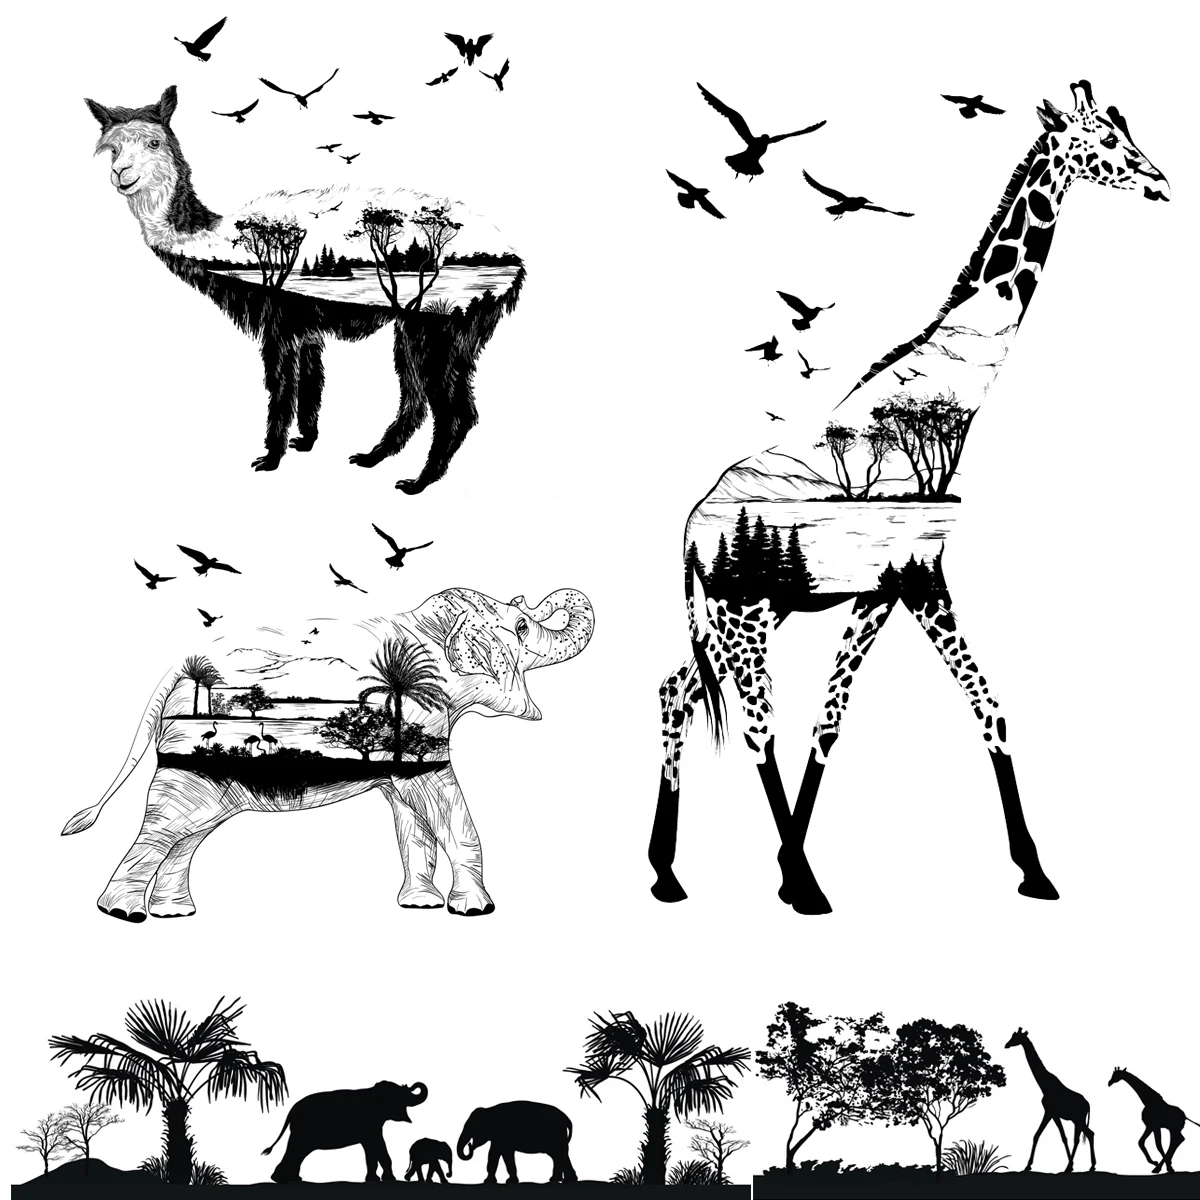 

Прозрачные резиновые штампы AZSG с изображением альпака, жирафа, панды, для рукоделия, скрапбукинга, декоративных открыток, творчества, забав...